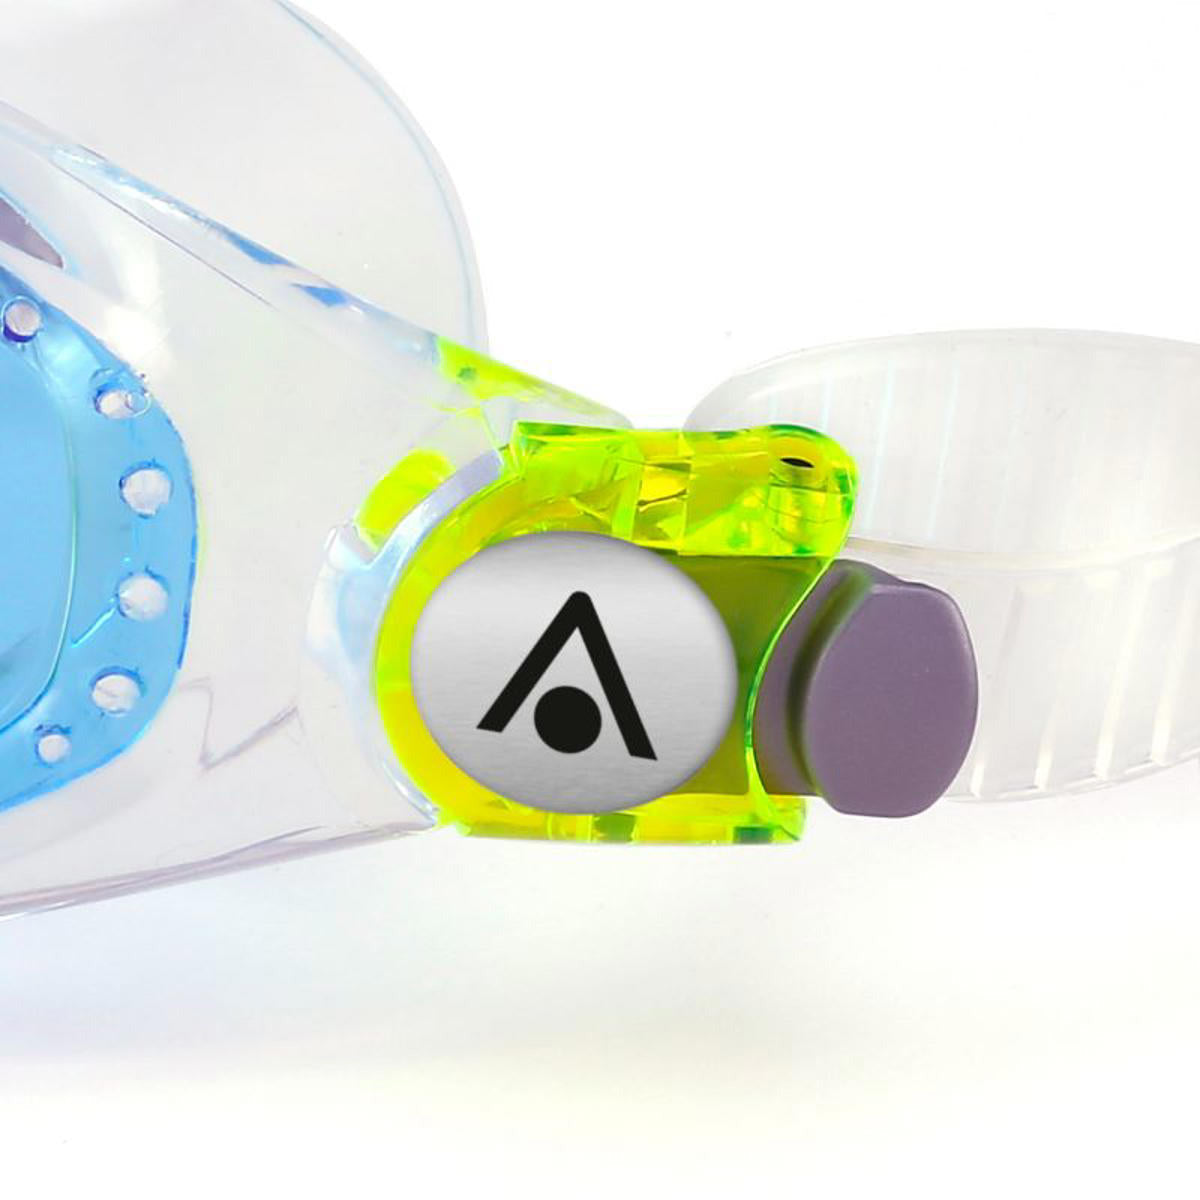 Aquasphere "Seal Kid 2" Svømmebriller til børn +3år - (Transparent m. blåtonede linser)